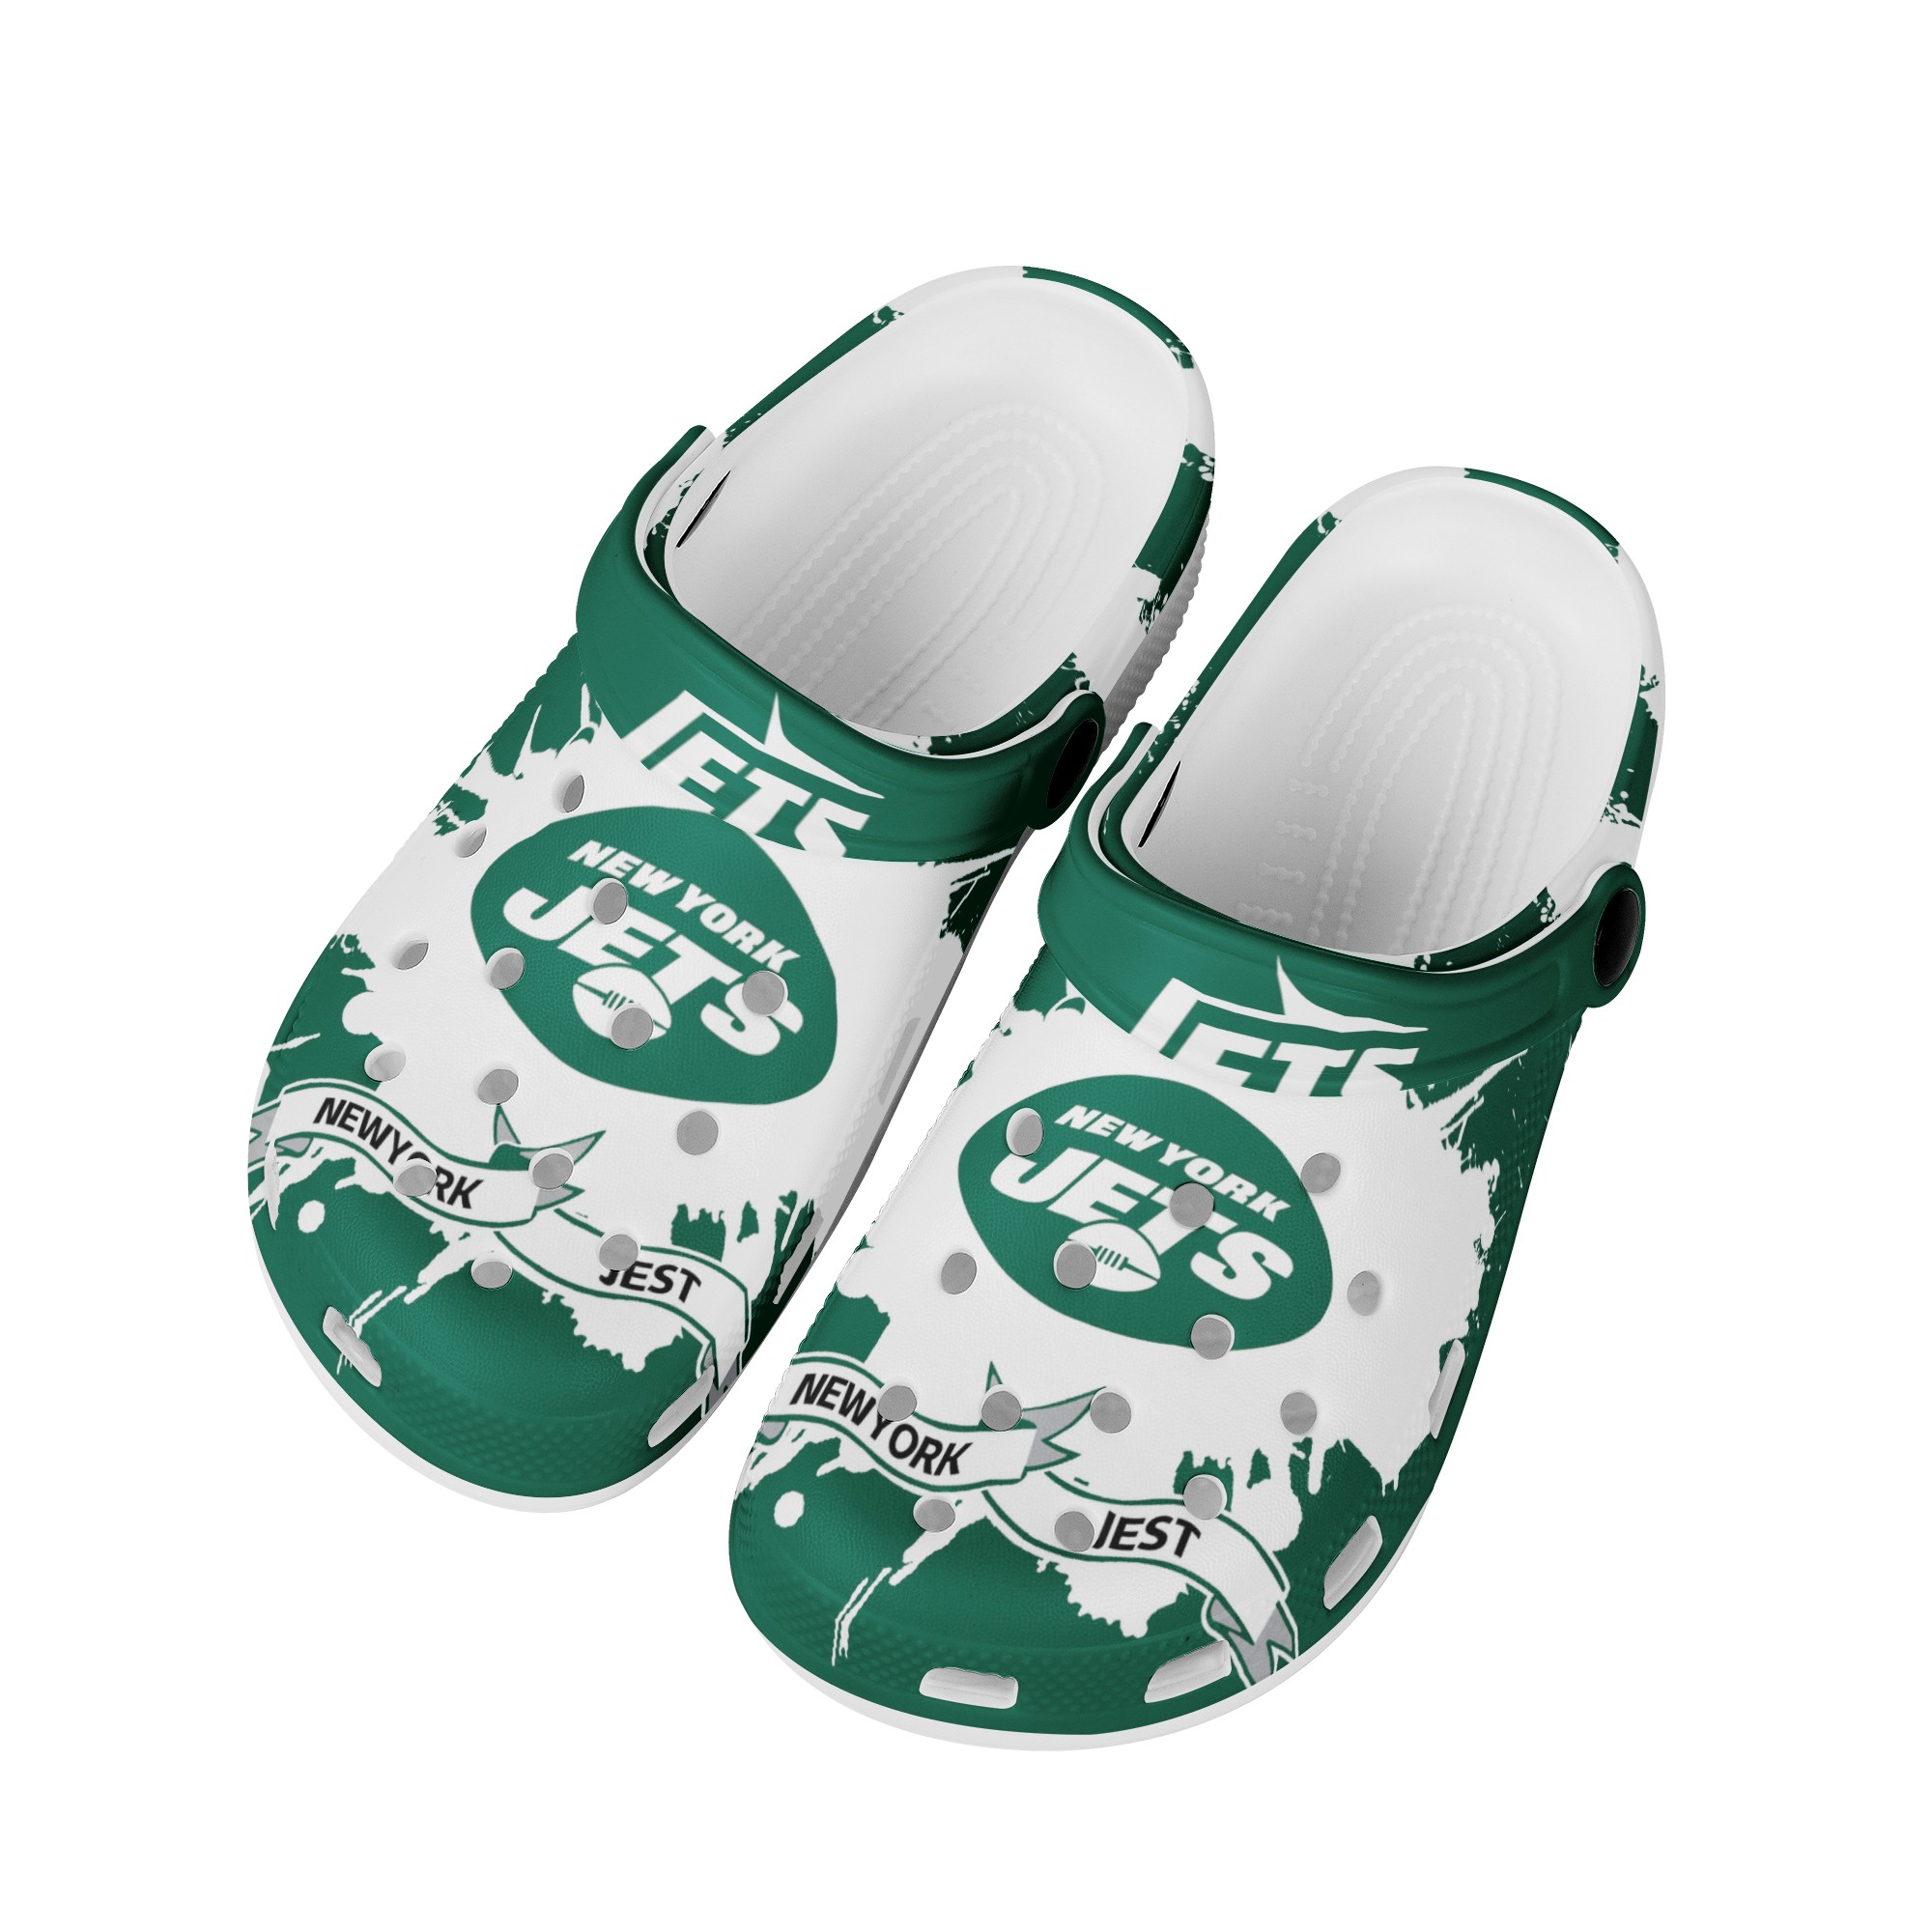 New York Jets Crocs Shoes cute Style#1 Shoes for fans -Jack sport shop